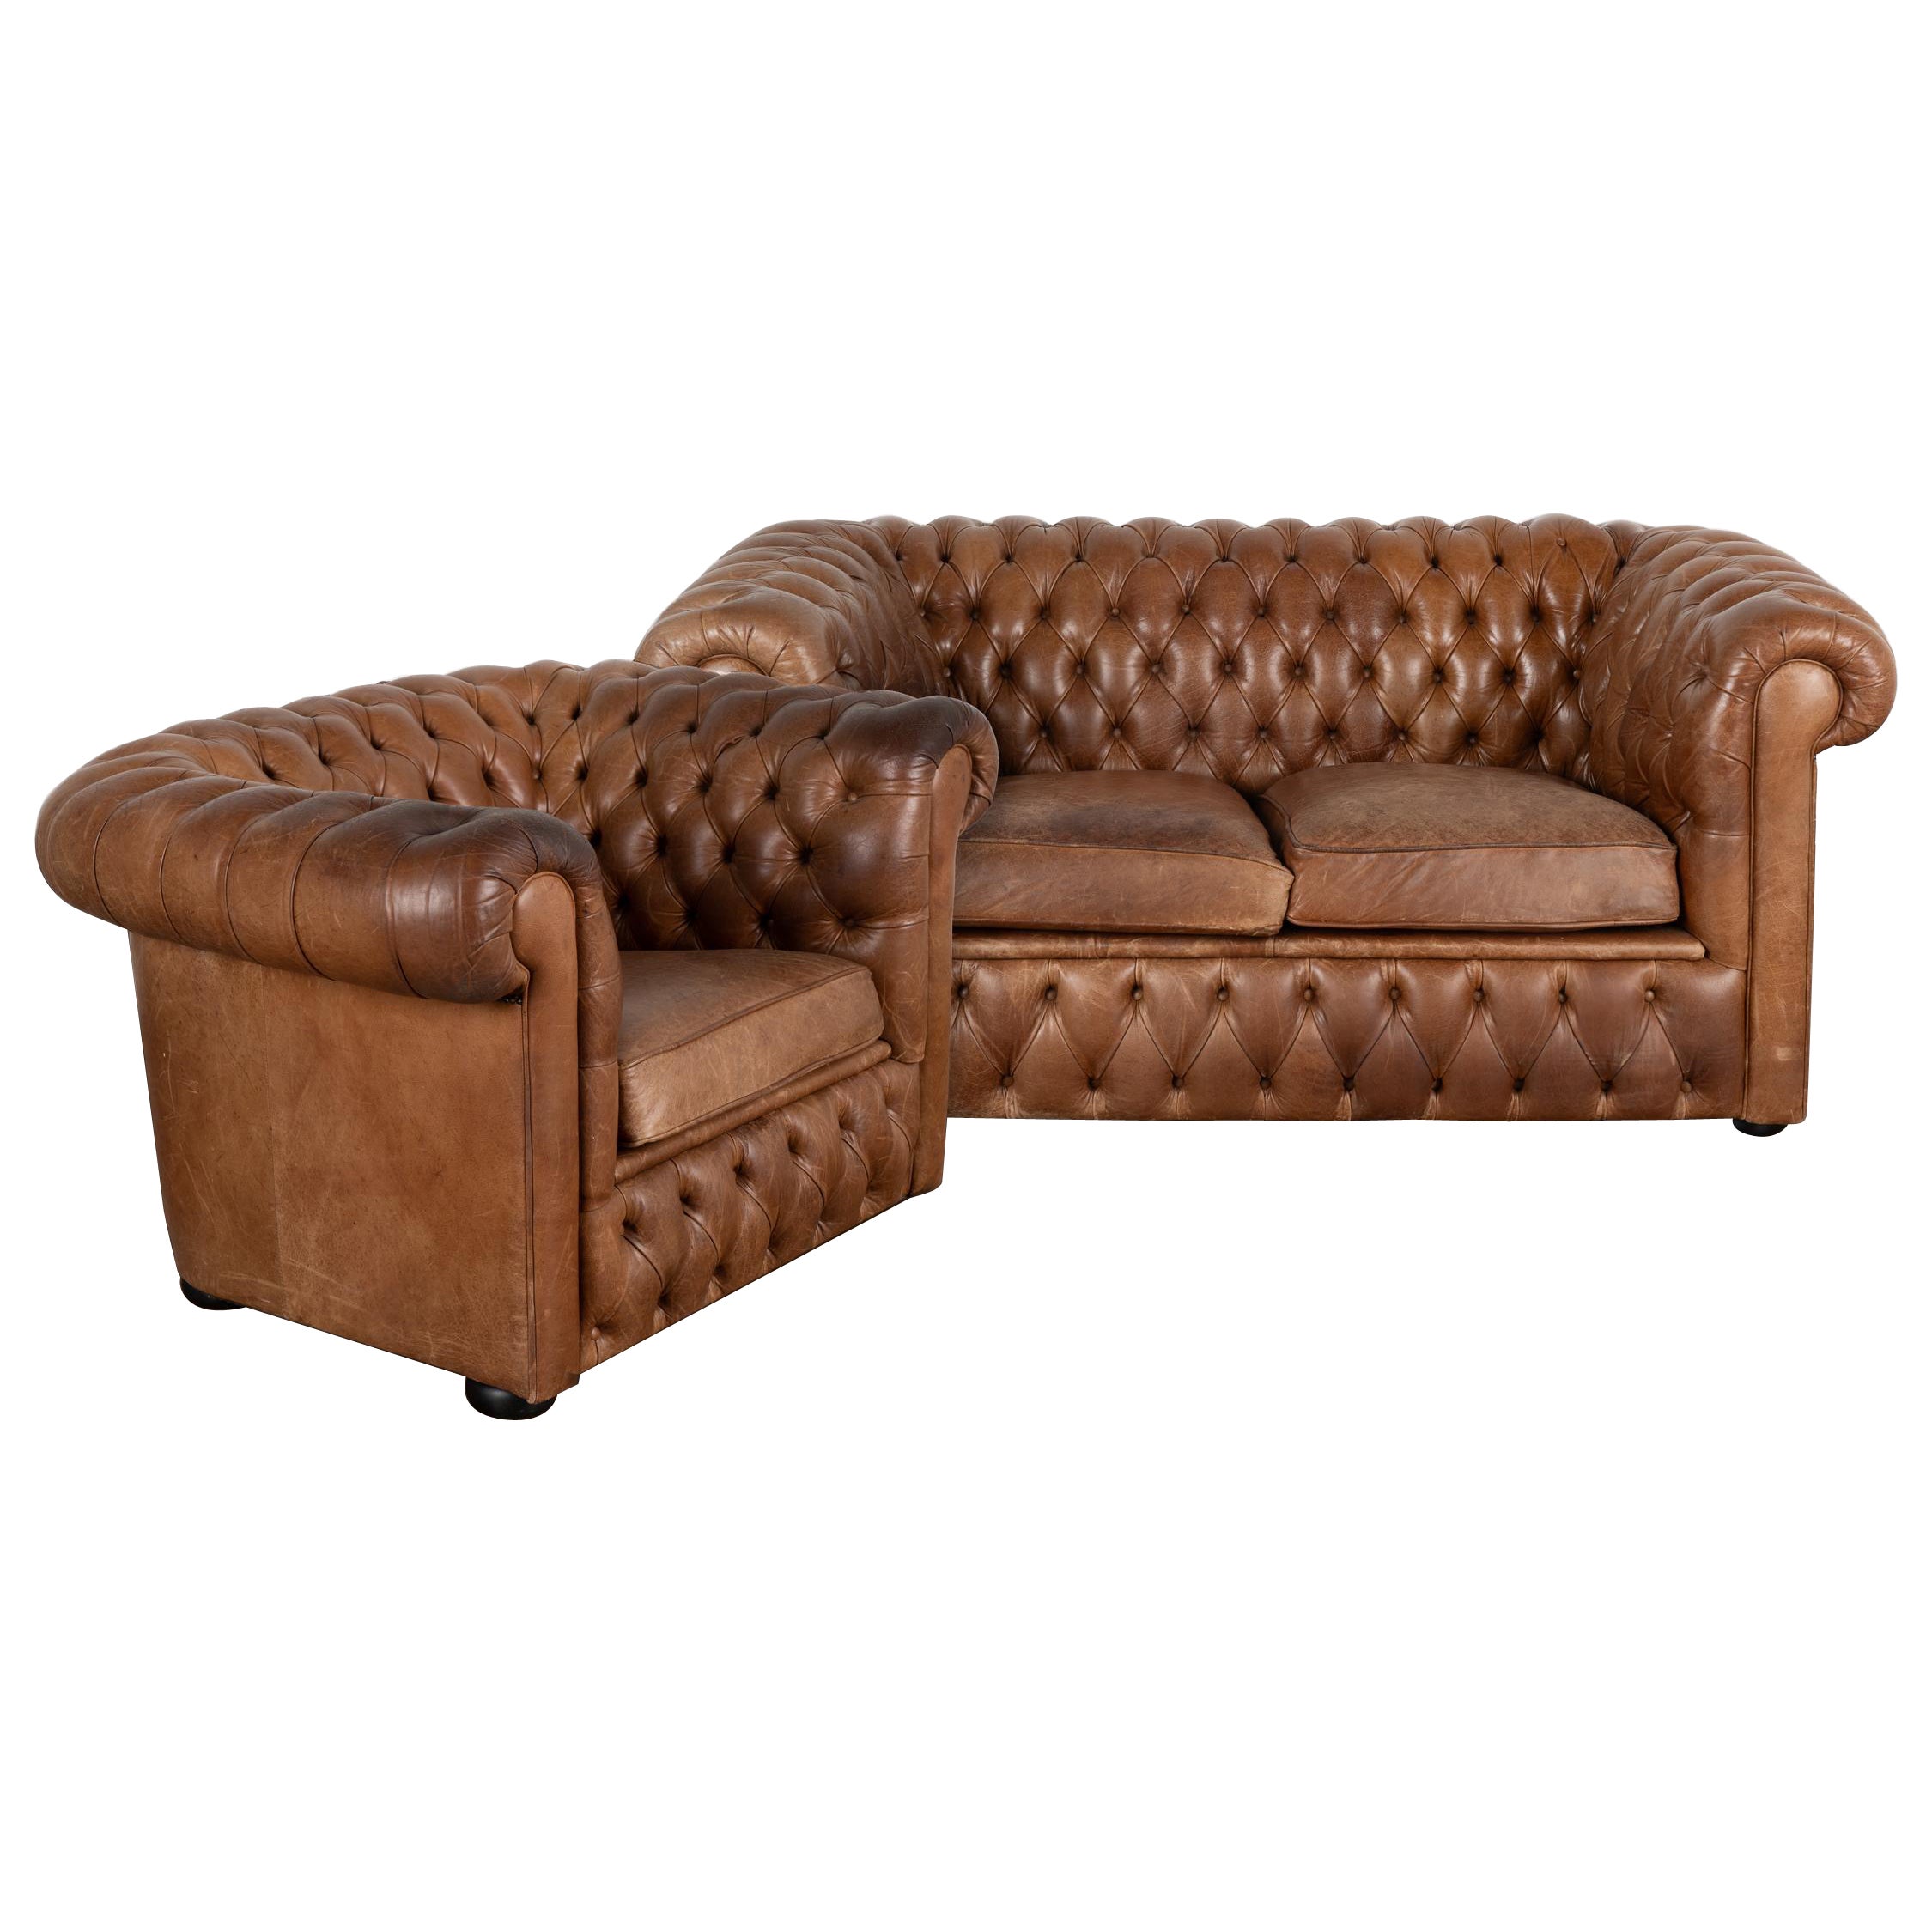 Pair, Brown Leather Chesterfield 2 Seat Sofa & Club Chair, Denmark circa 1960-70